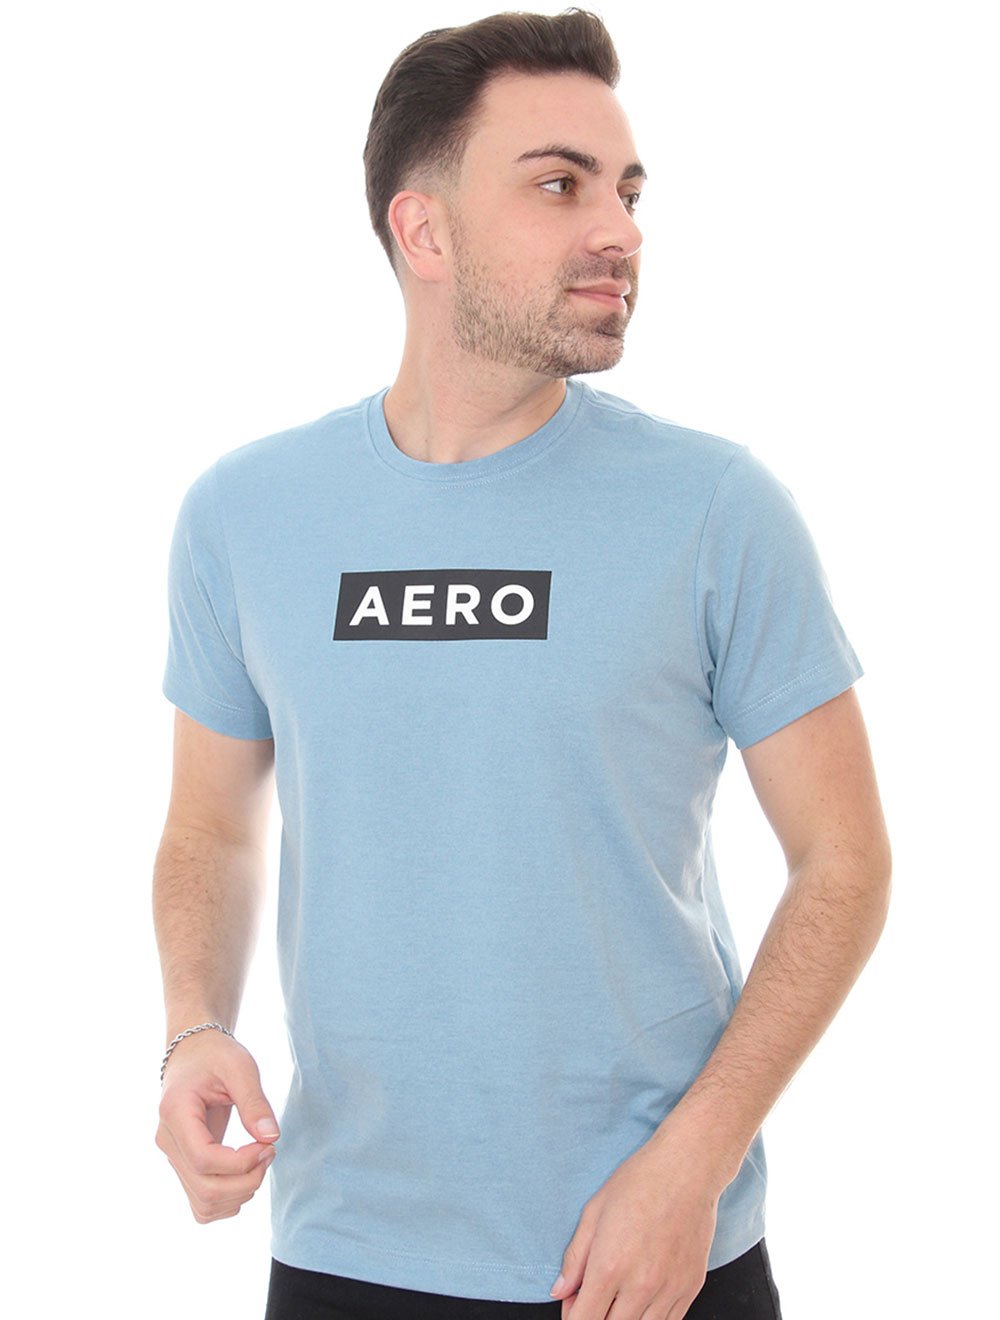 Camiseta Aeropostale Masculina Aero Block Azul Claro